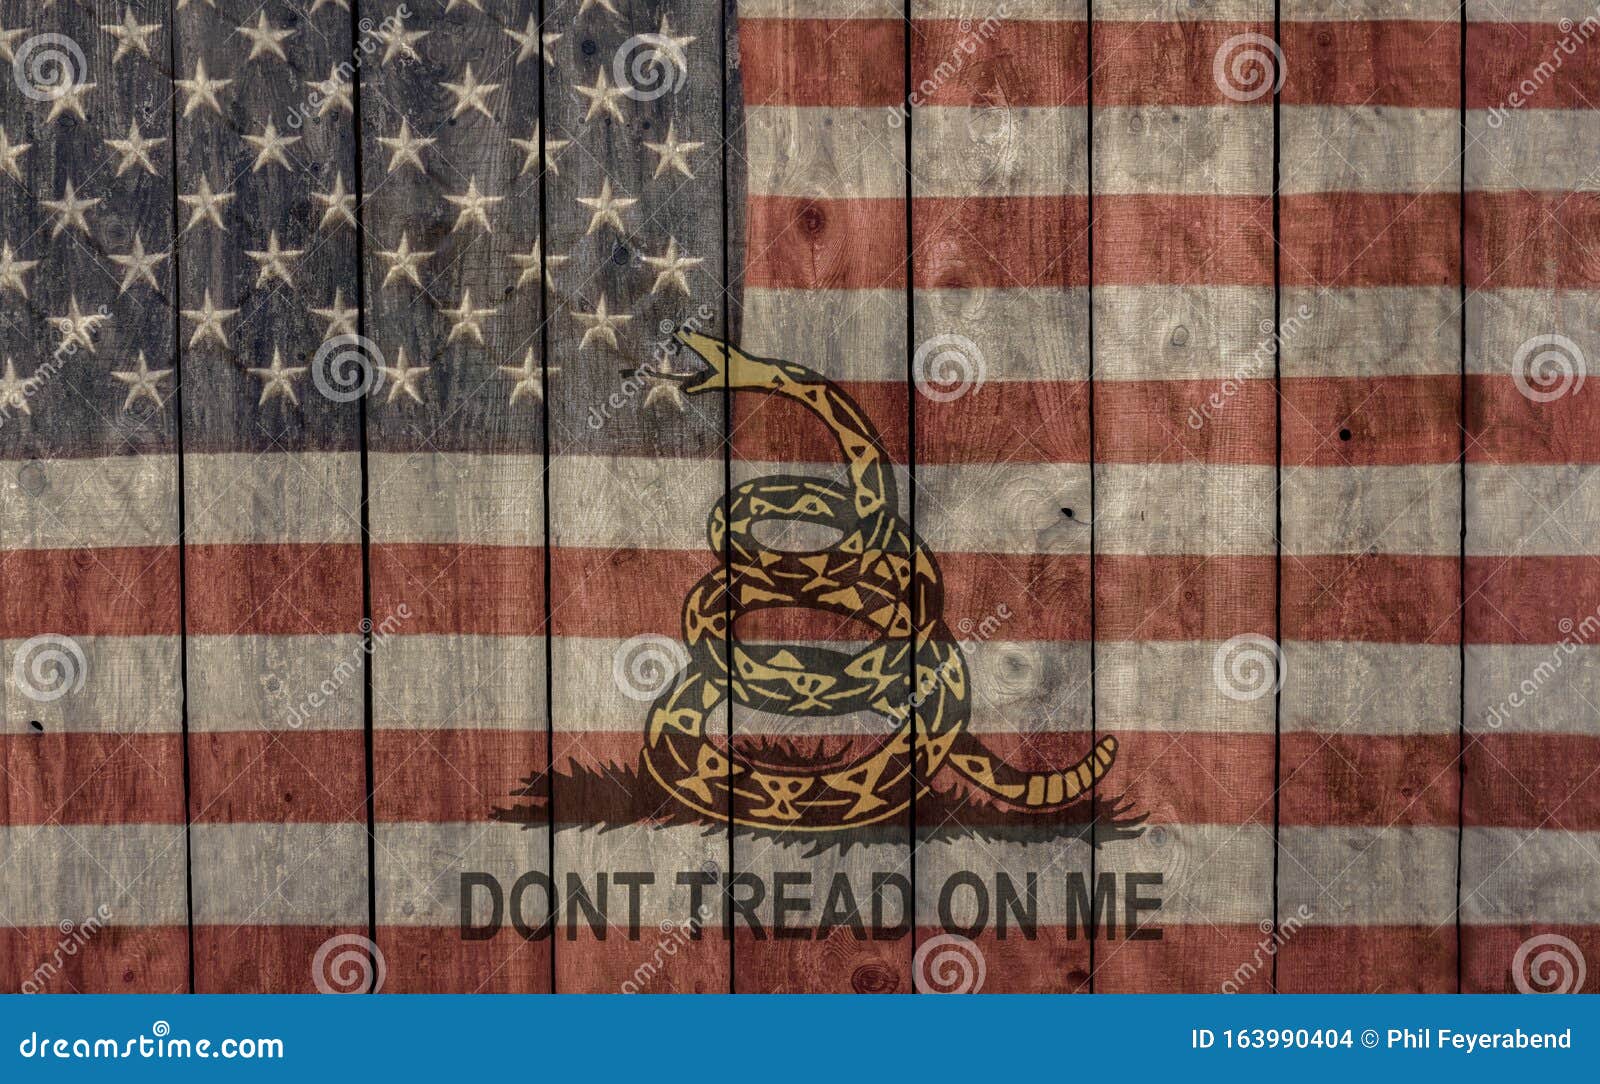 Phone Wallpaper Gadsden Flag 3D edition by LiberAncap on DeviantArt